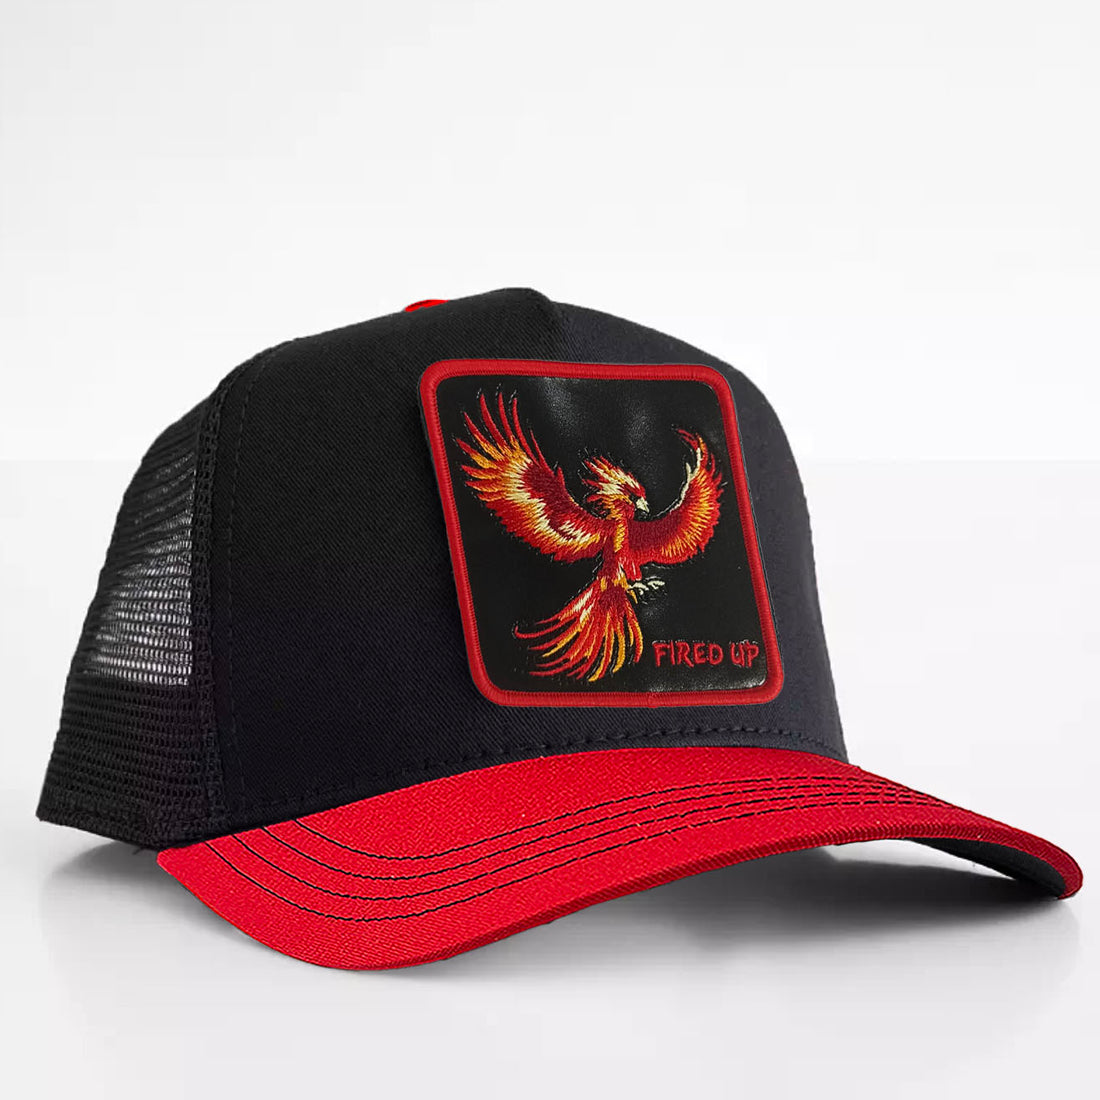 Phoenix - "Fired Up" Trucker Hat